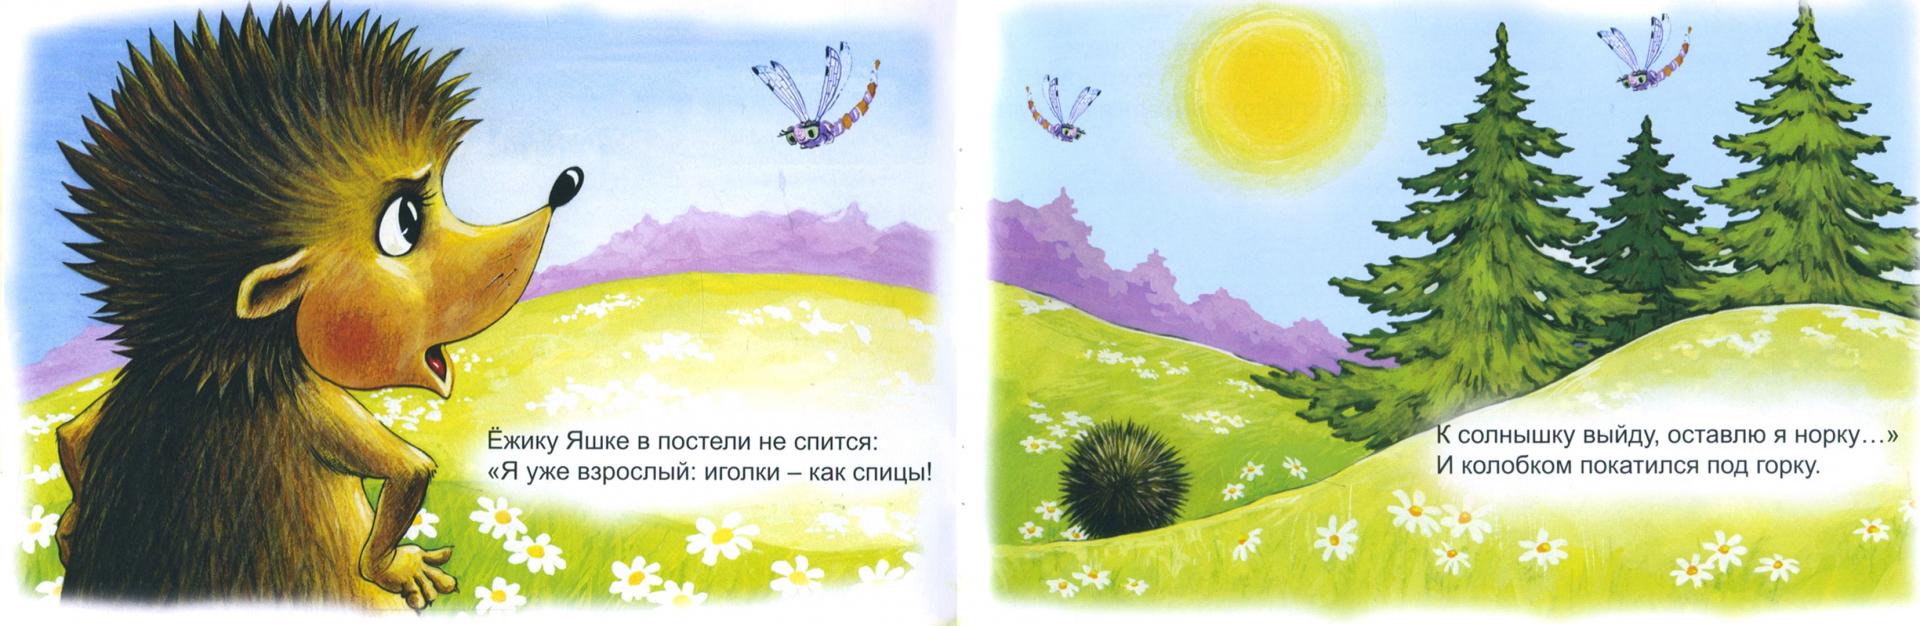 Иллюстрация 1 из 22 для Ёжик Яшка - В. Борисов | Лабиринт - книги. Источник: Лабиринт